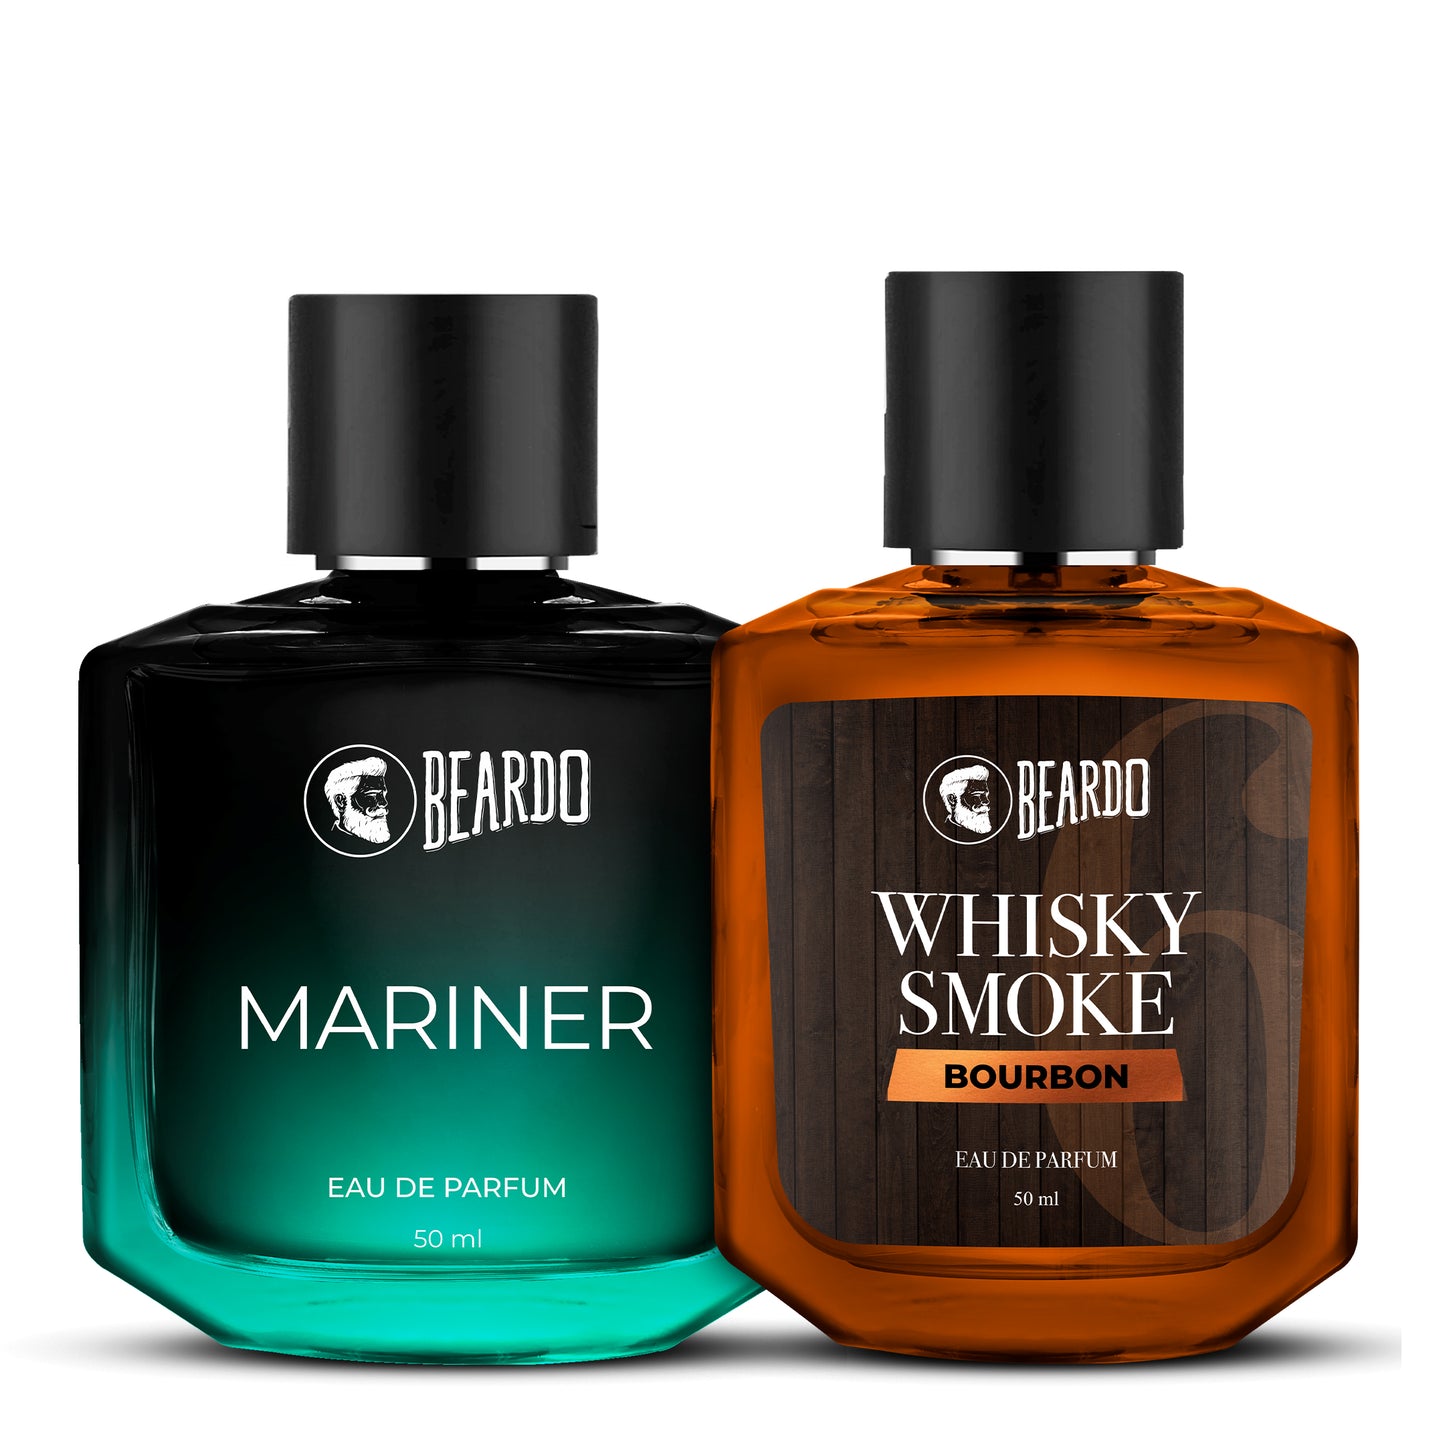 beardo perfume combo, beardo mariner, beardo whisky smoke bourbon, beardo mariner perfume, beardo edp combo, beardo bourbon and mariner combo, perfume combo pack for men, Which EDP is best for men, Which EDP perfume is best? Which is the famous perfume for men, Which company perfume is best?